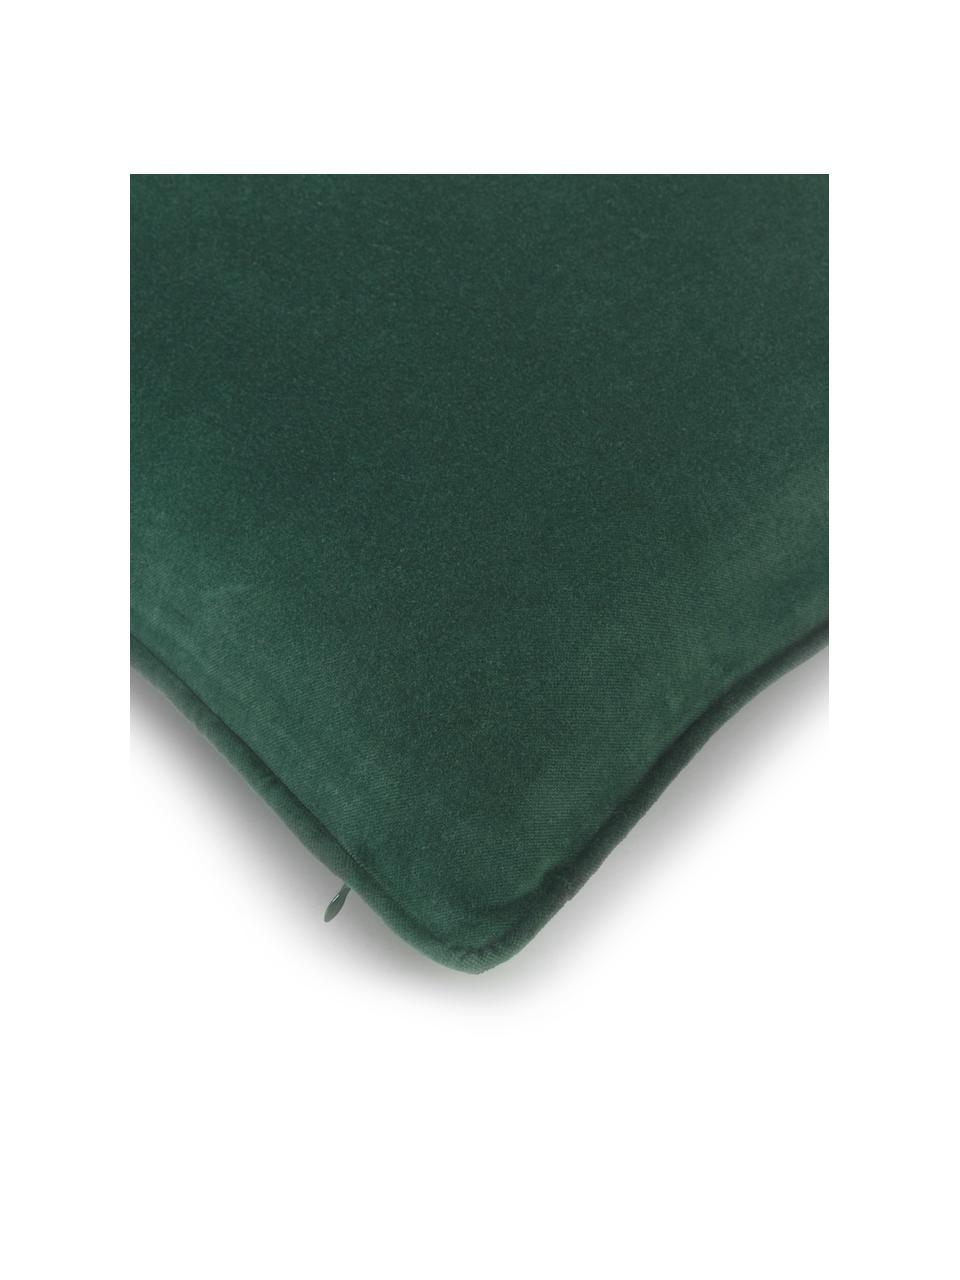 Einfarbige Samt-Kissenhülle Dana, 100% Baumwollsamt, Smaragdgrün, B 30 x L 50 cm